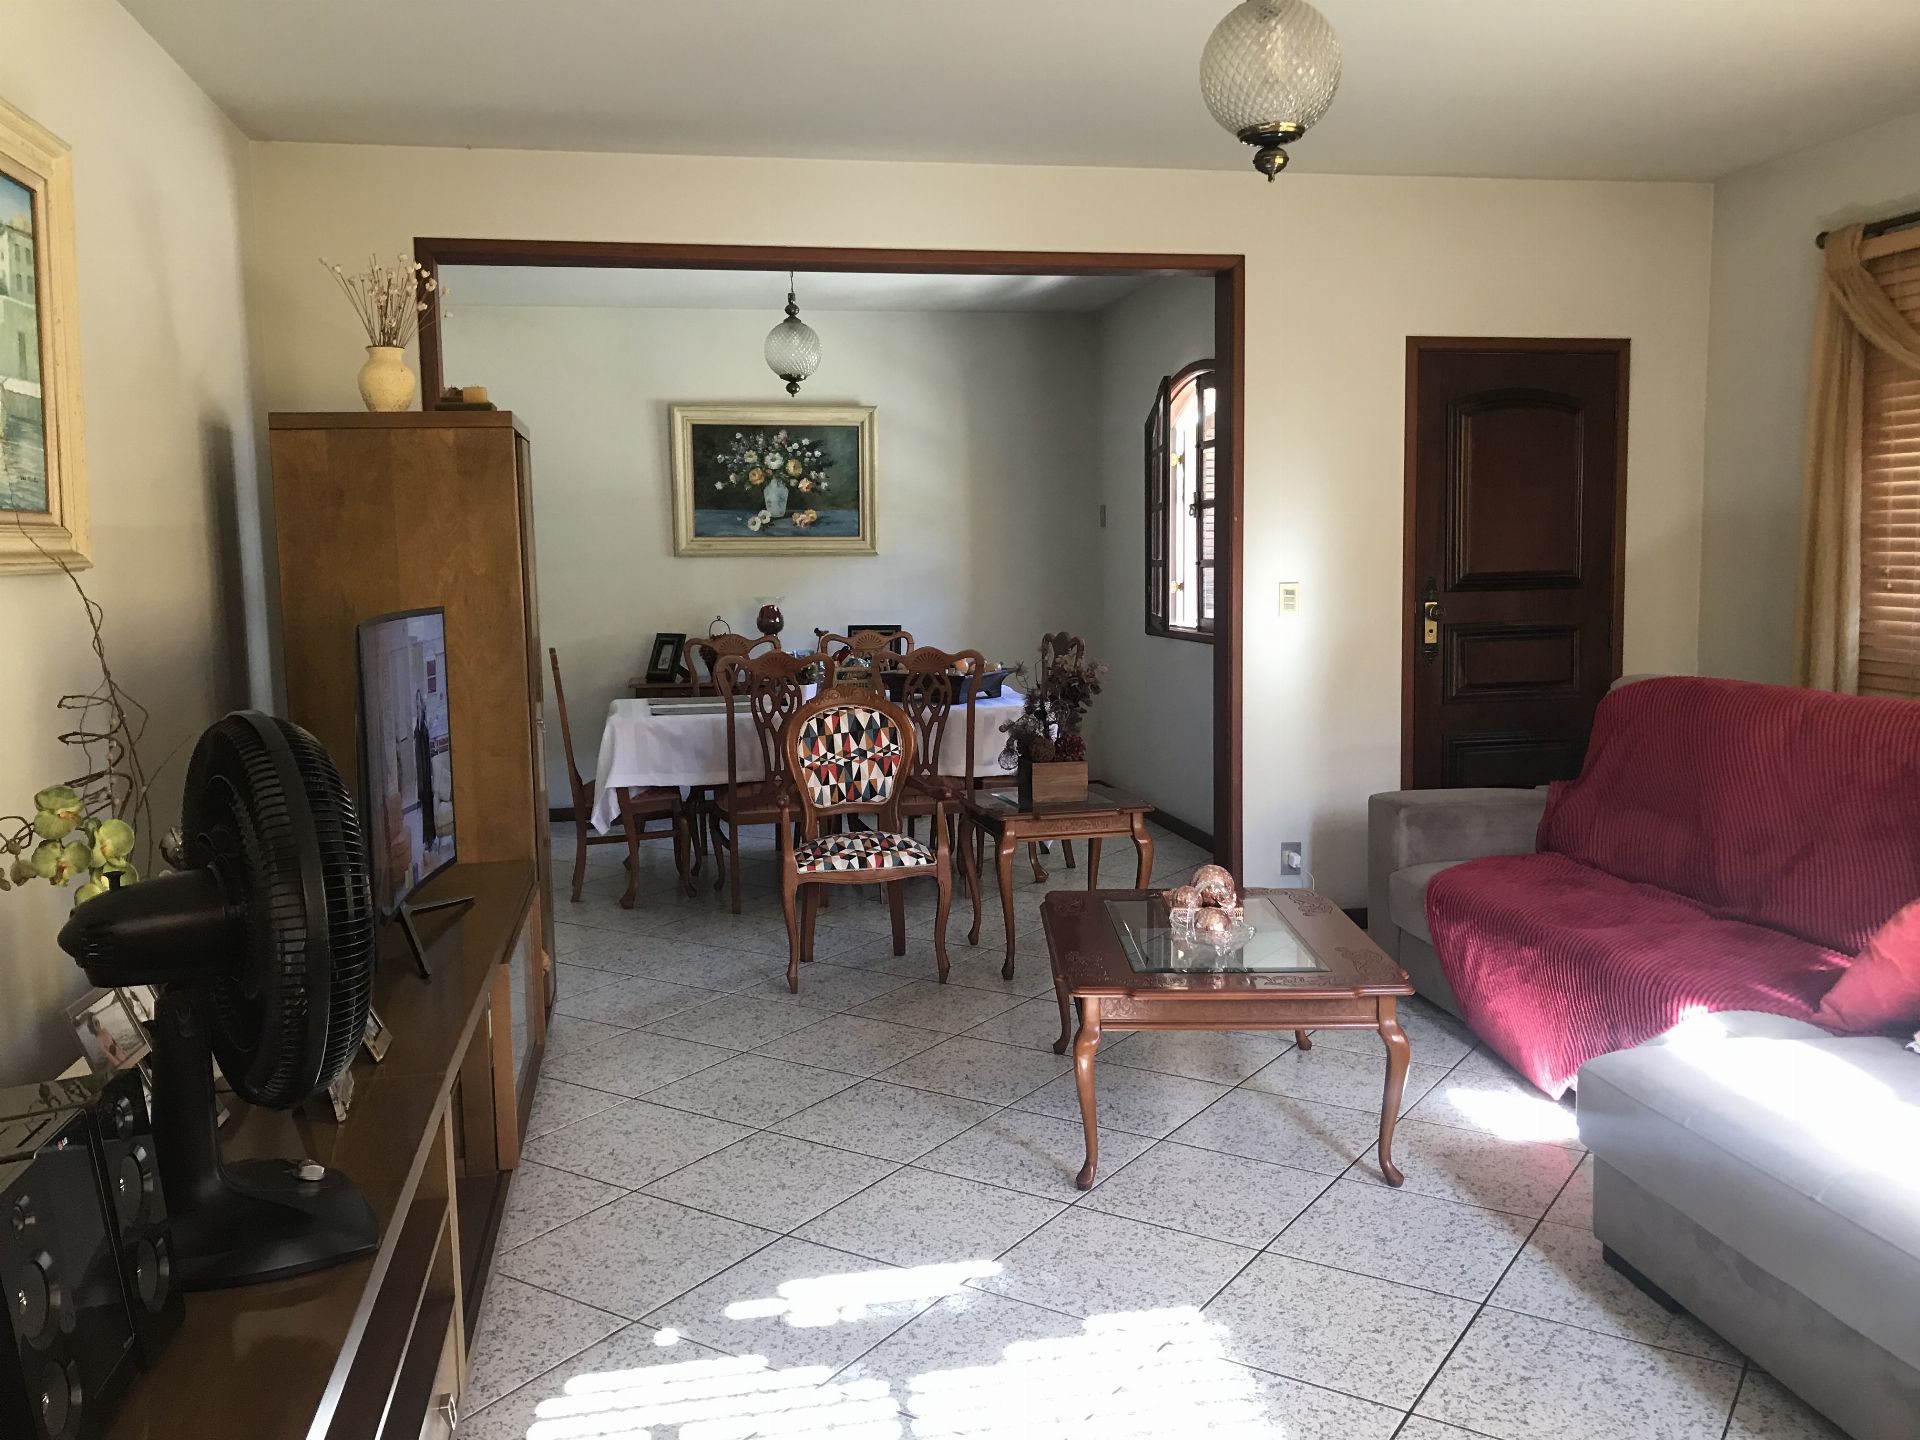 FOTO 3 - Casa em Condomínio 4 quartos à venda Vila Valqueire, Rio de Janeiro - R$ 1.600.000 - RF205 - 4